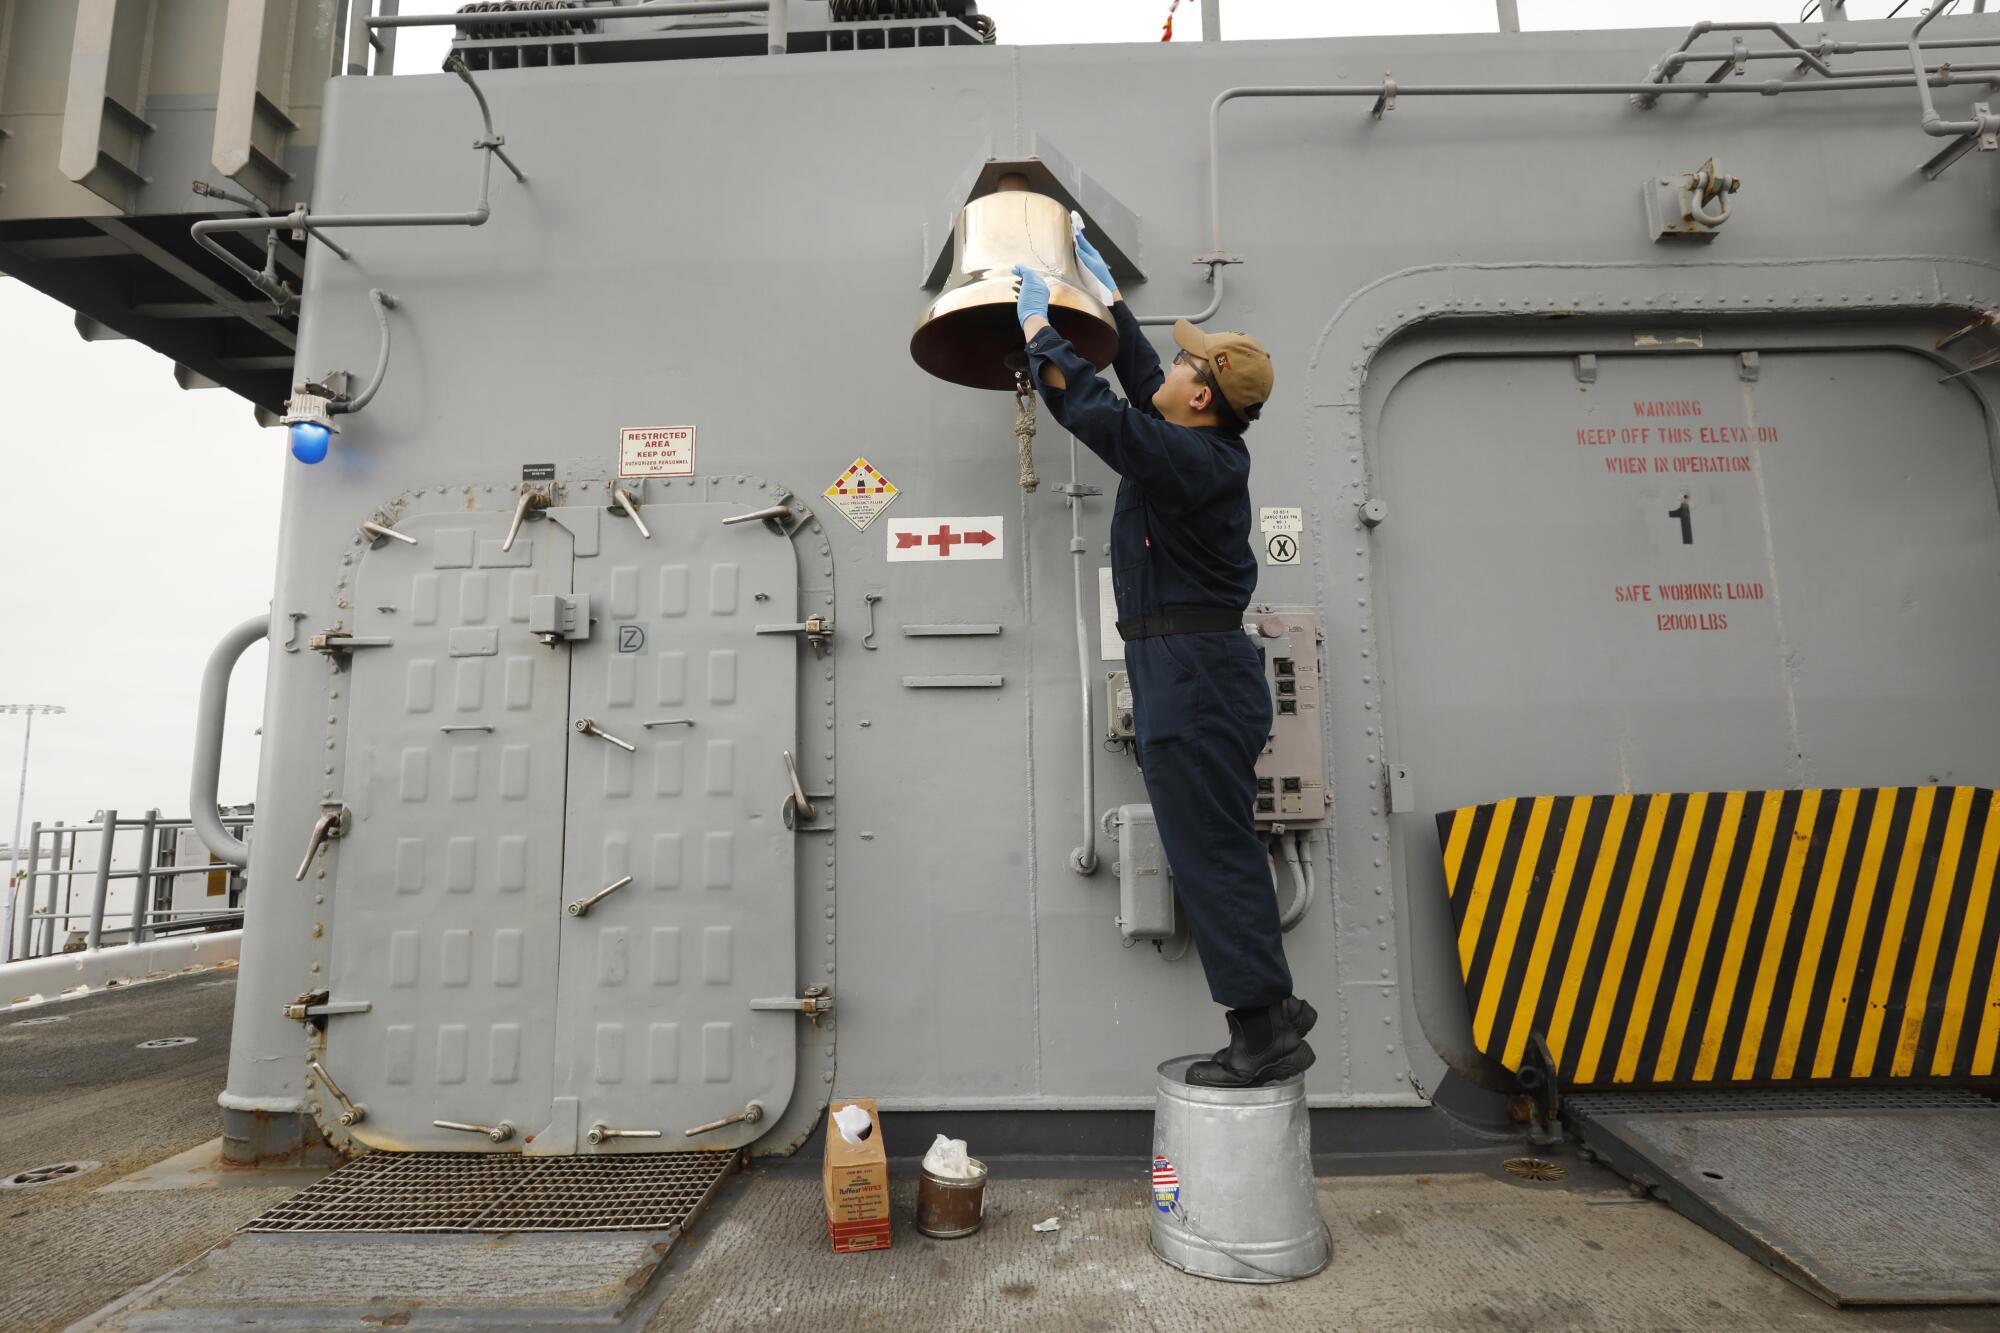 On board the amphibious assault ship USS Essex, Petty Officer 3rd class Isaac Schweitzer shines the ship's bell